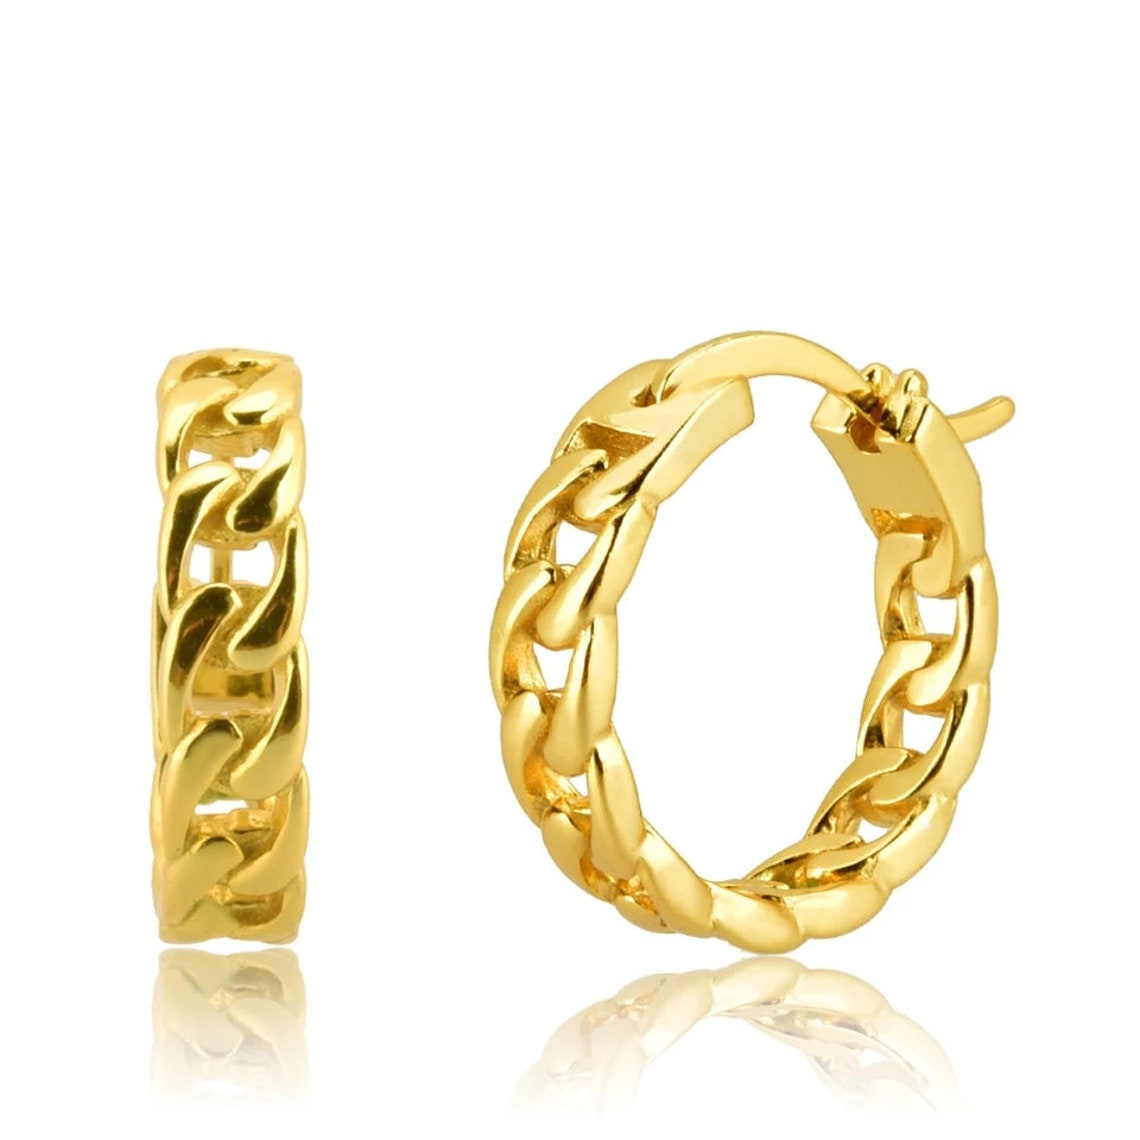 CUBAN CHAIN Hoop Earrings 18k gold plated earrings Hoop | Etsy